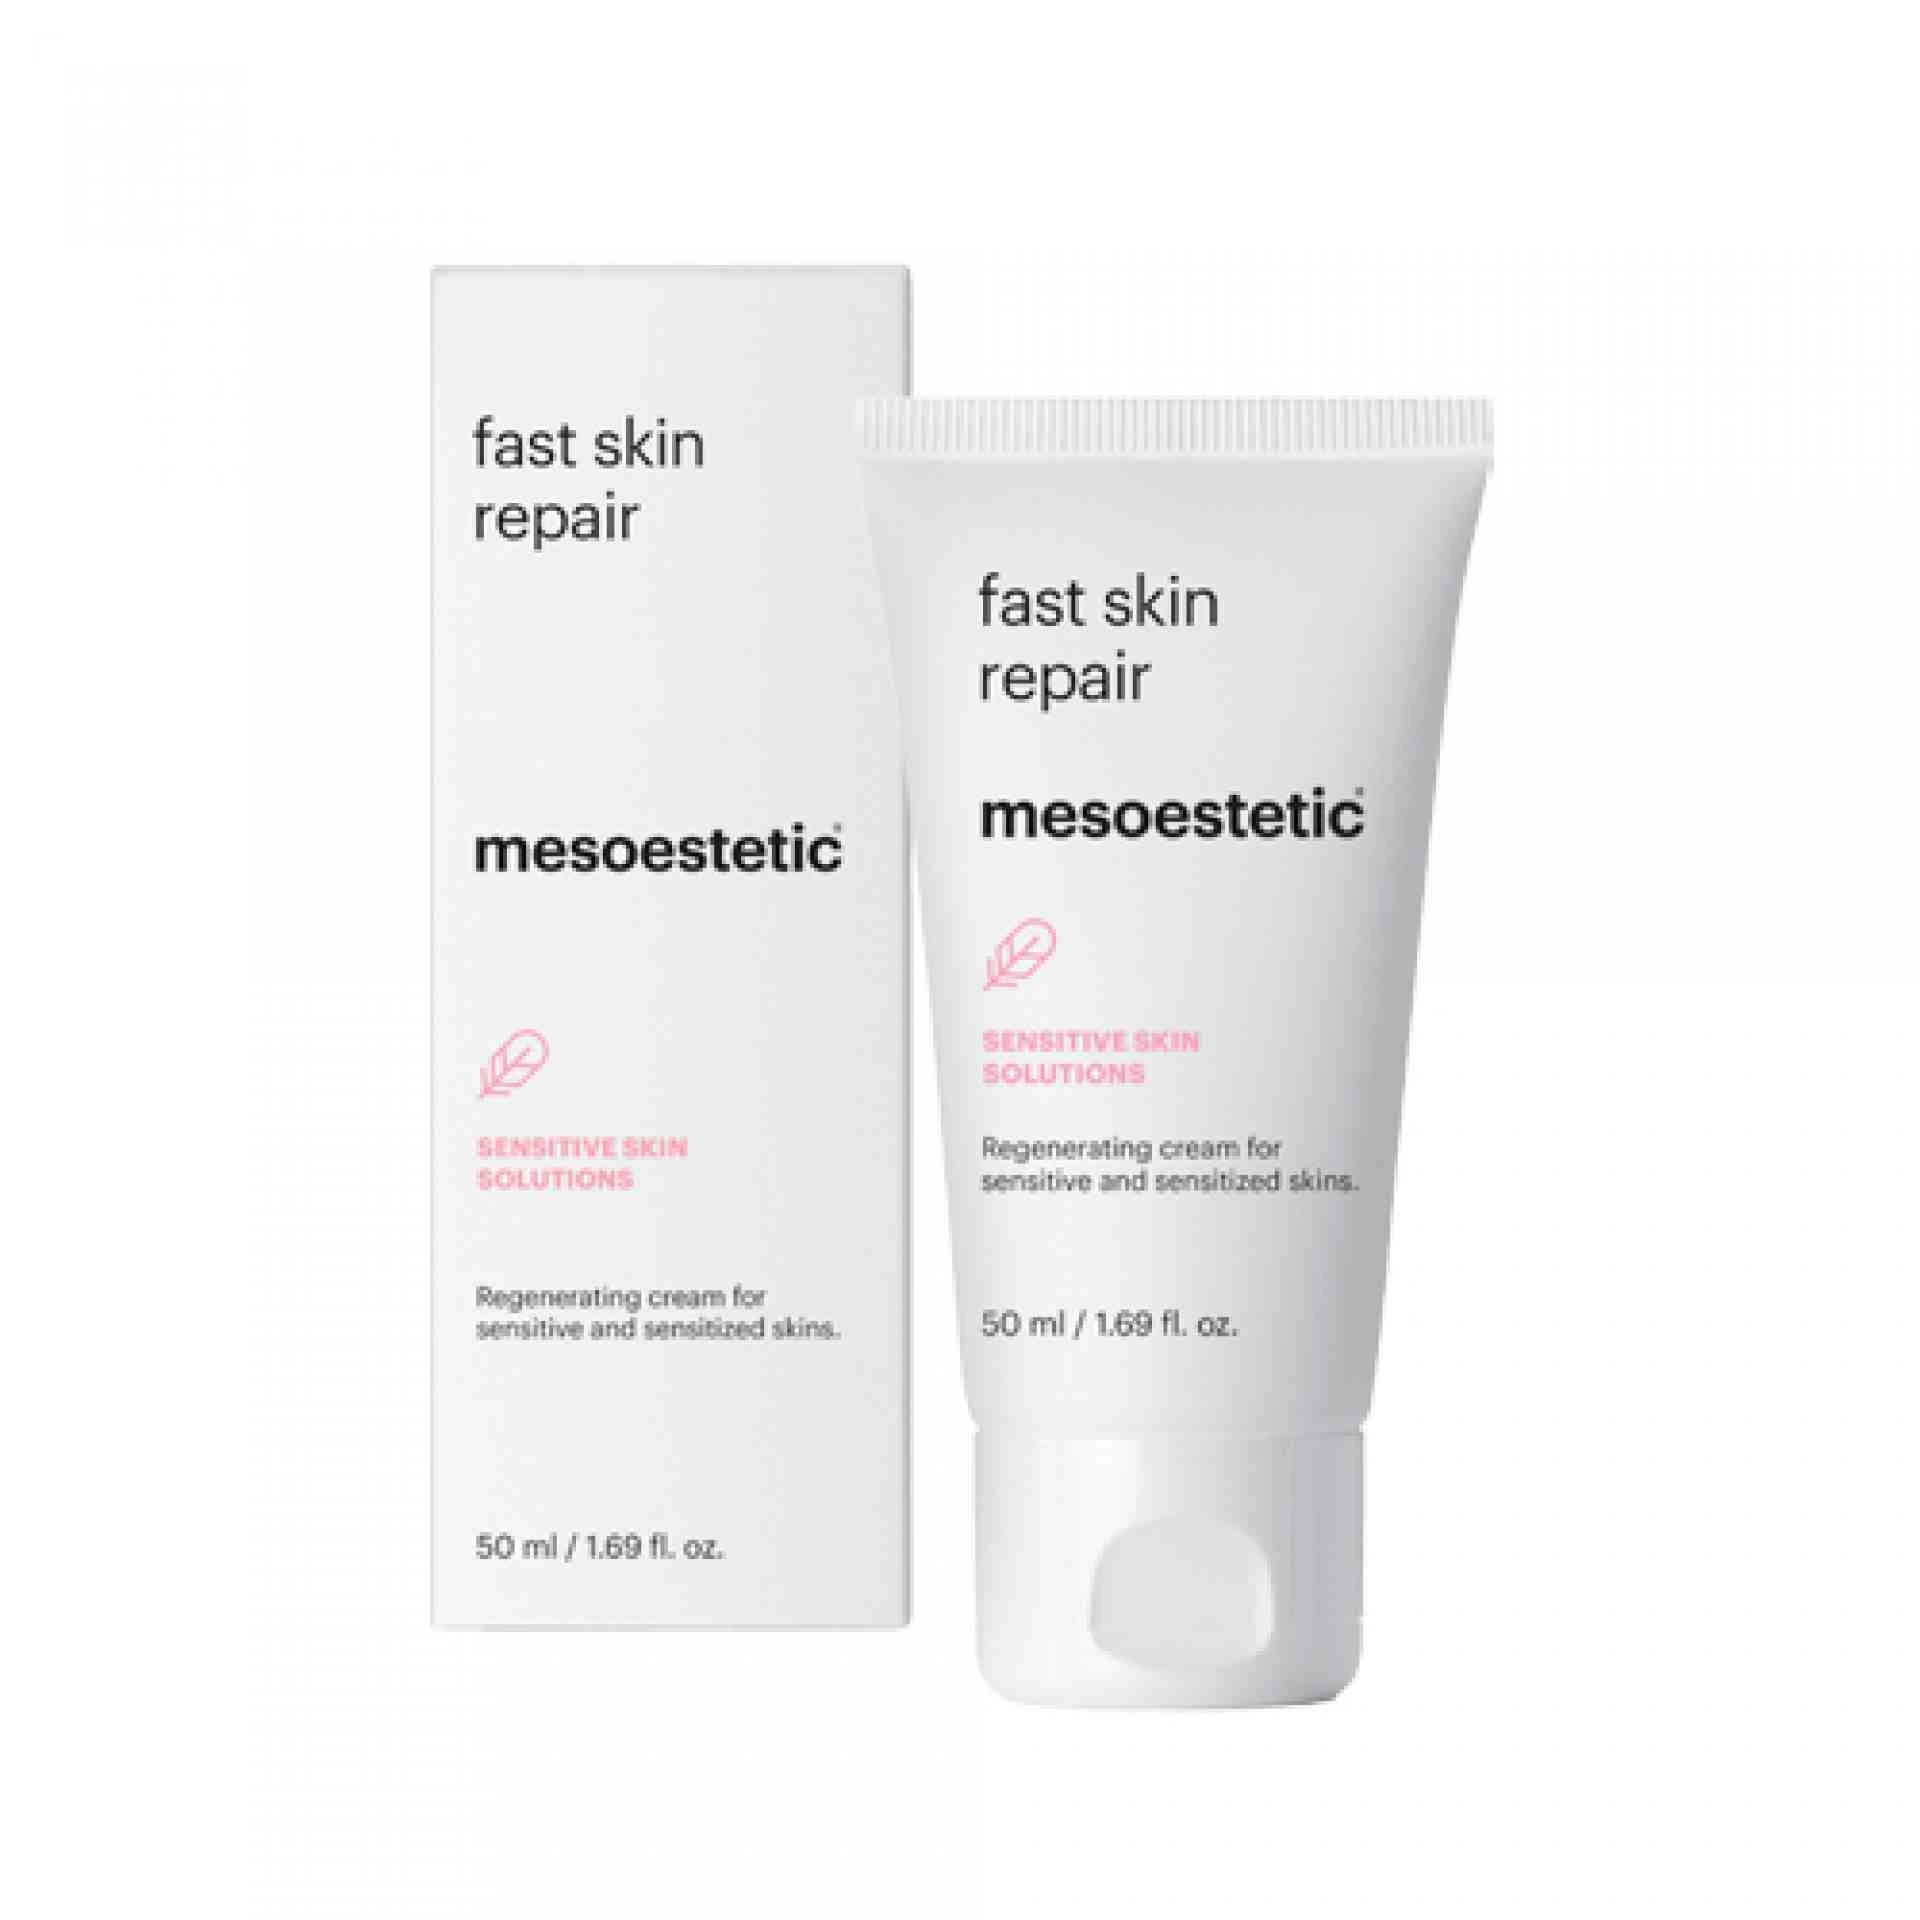 Post-Procedure Fast Skin Repair | Crema 50ml - Sensitive Skin Solutions - Mesoestetic ®